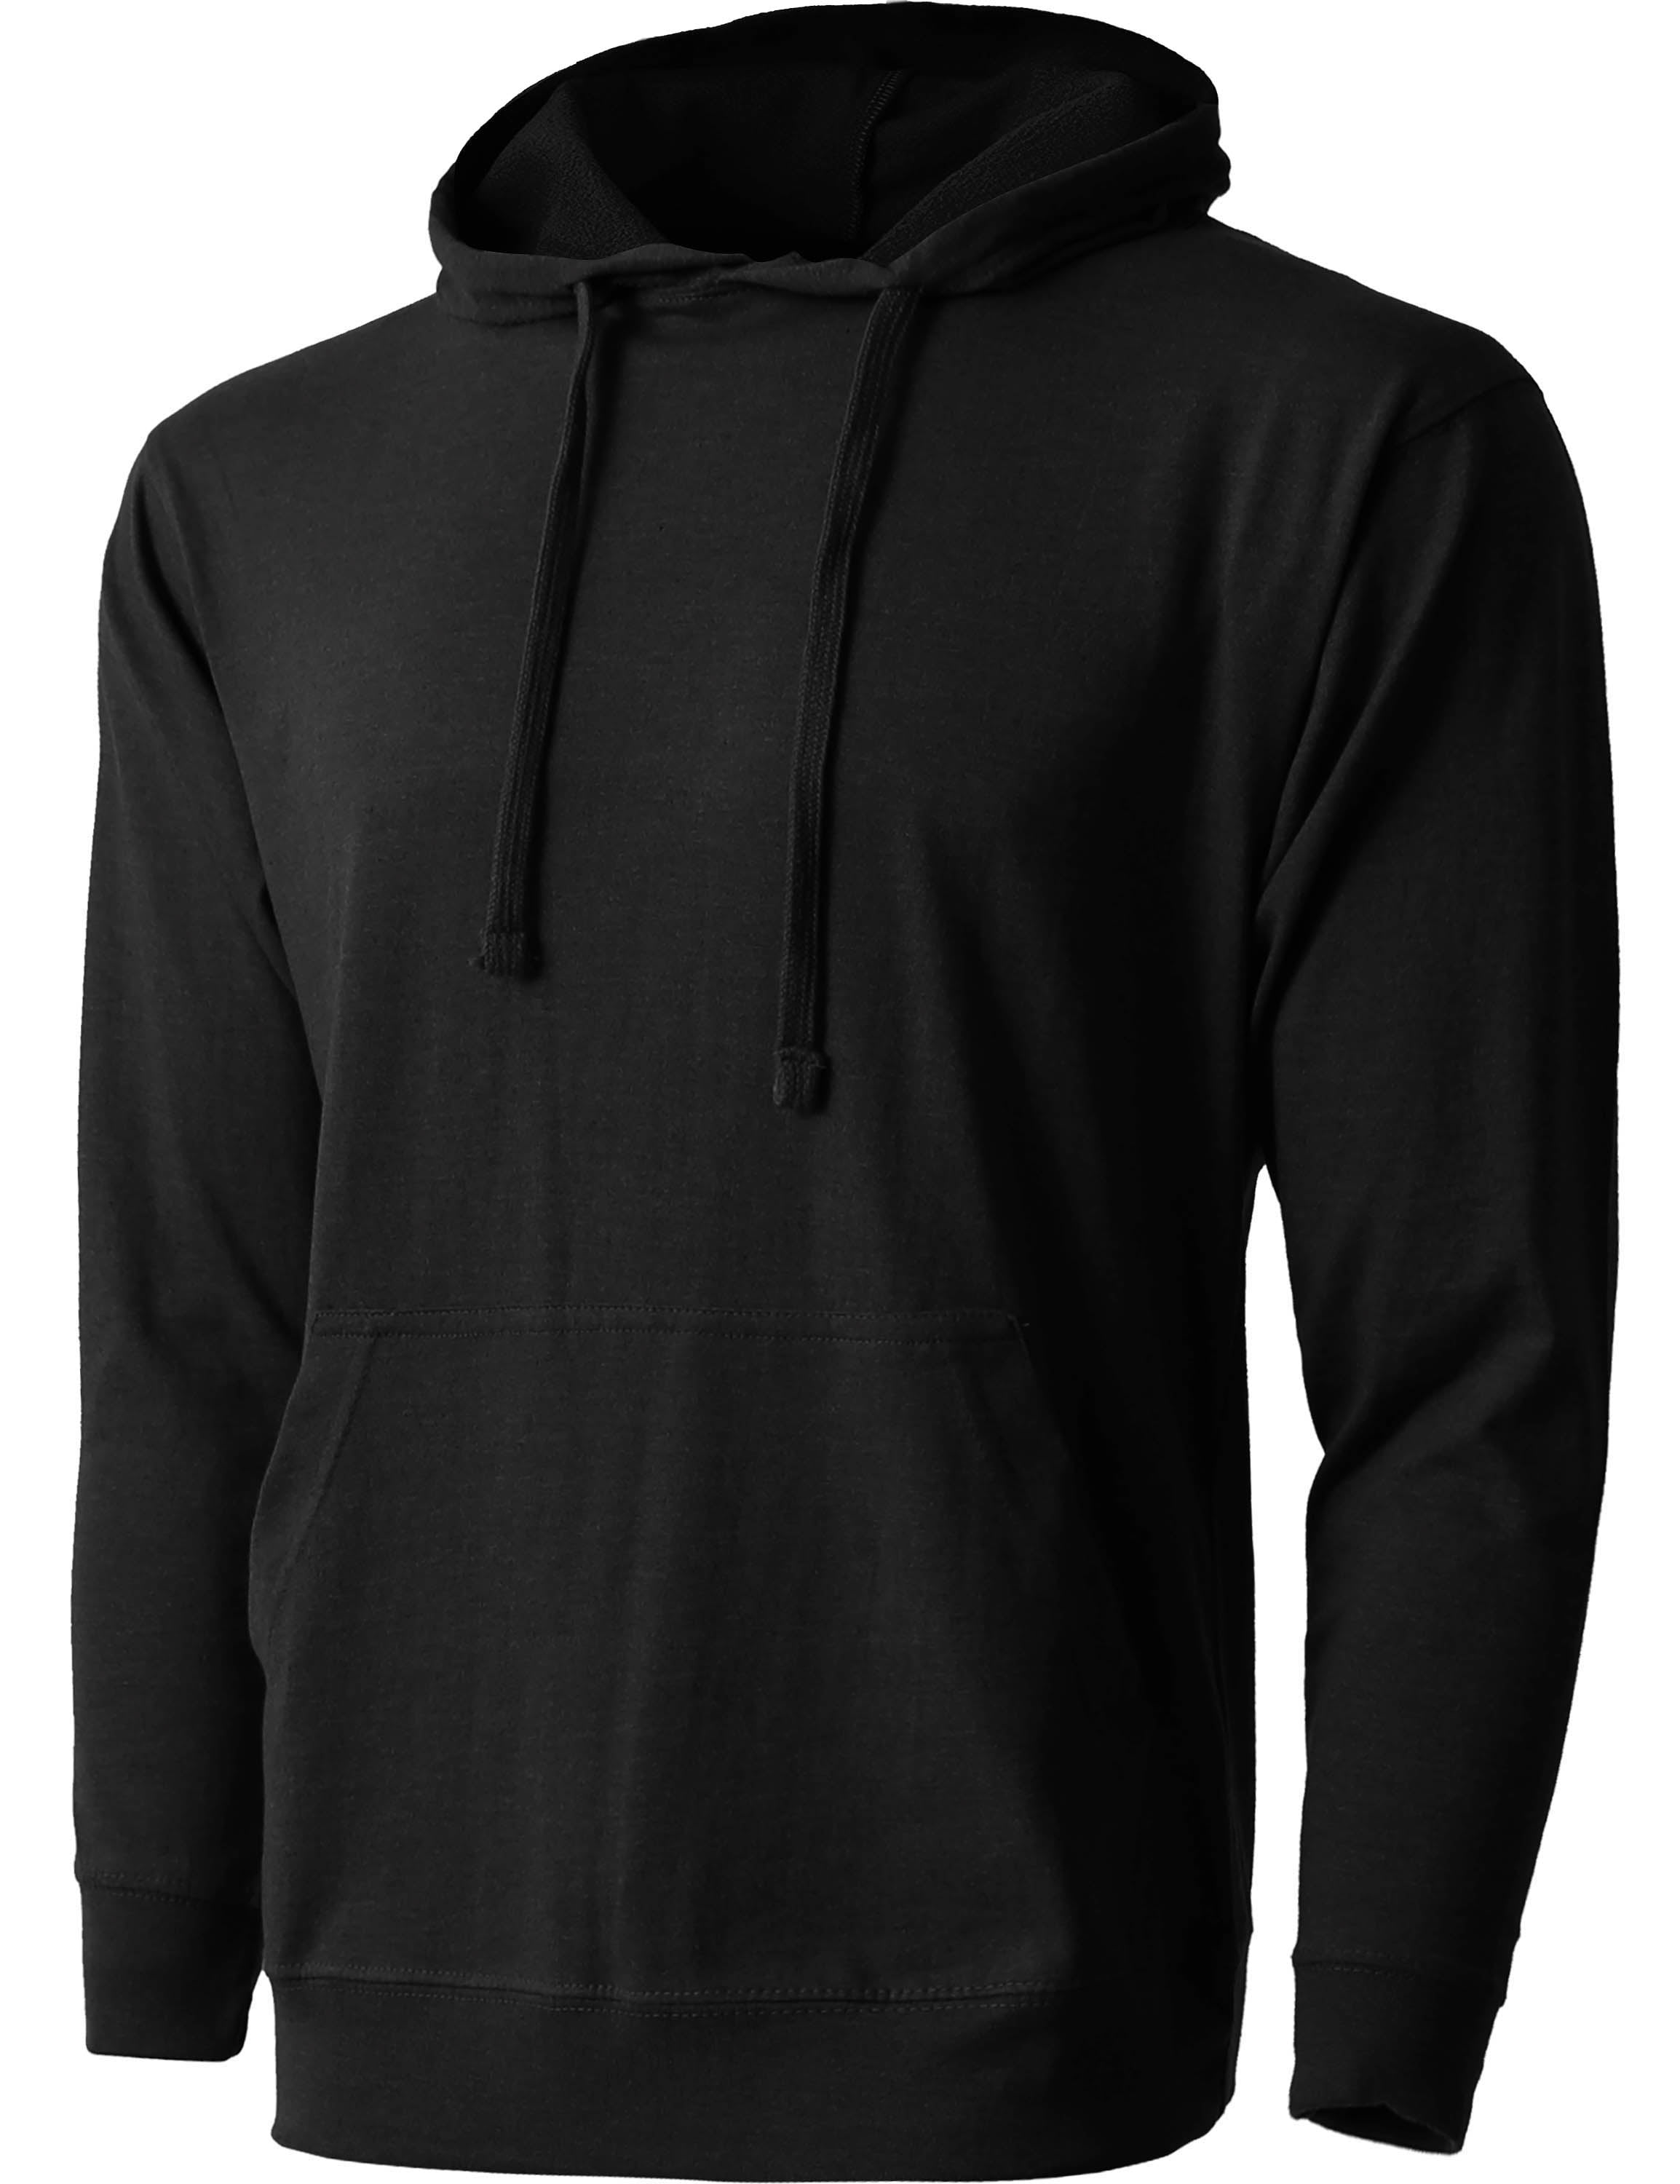 walkers jacquard hoodie